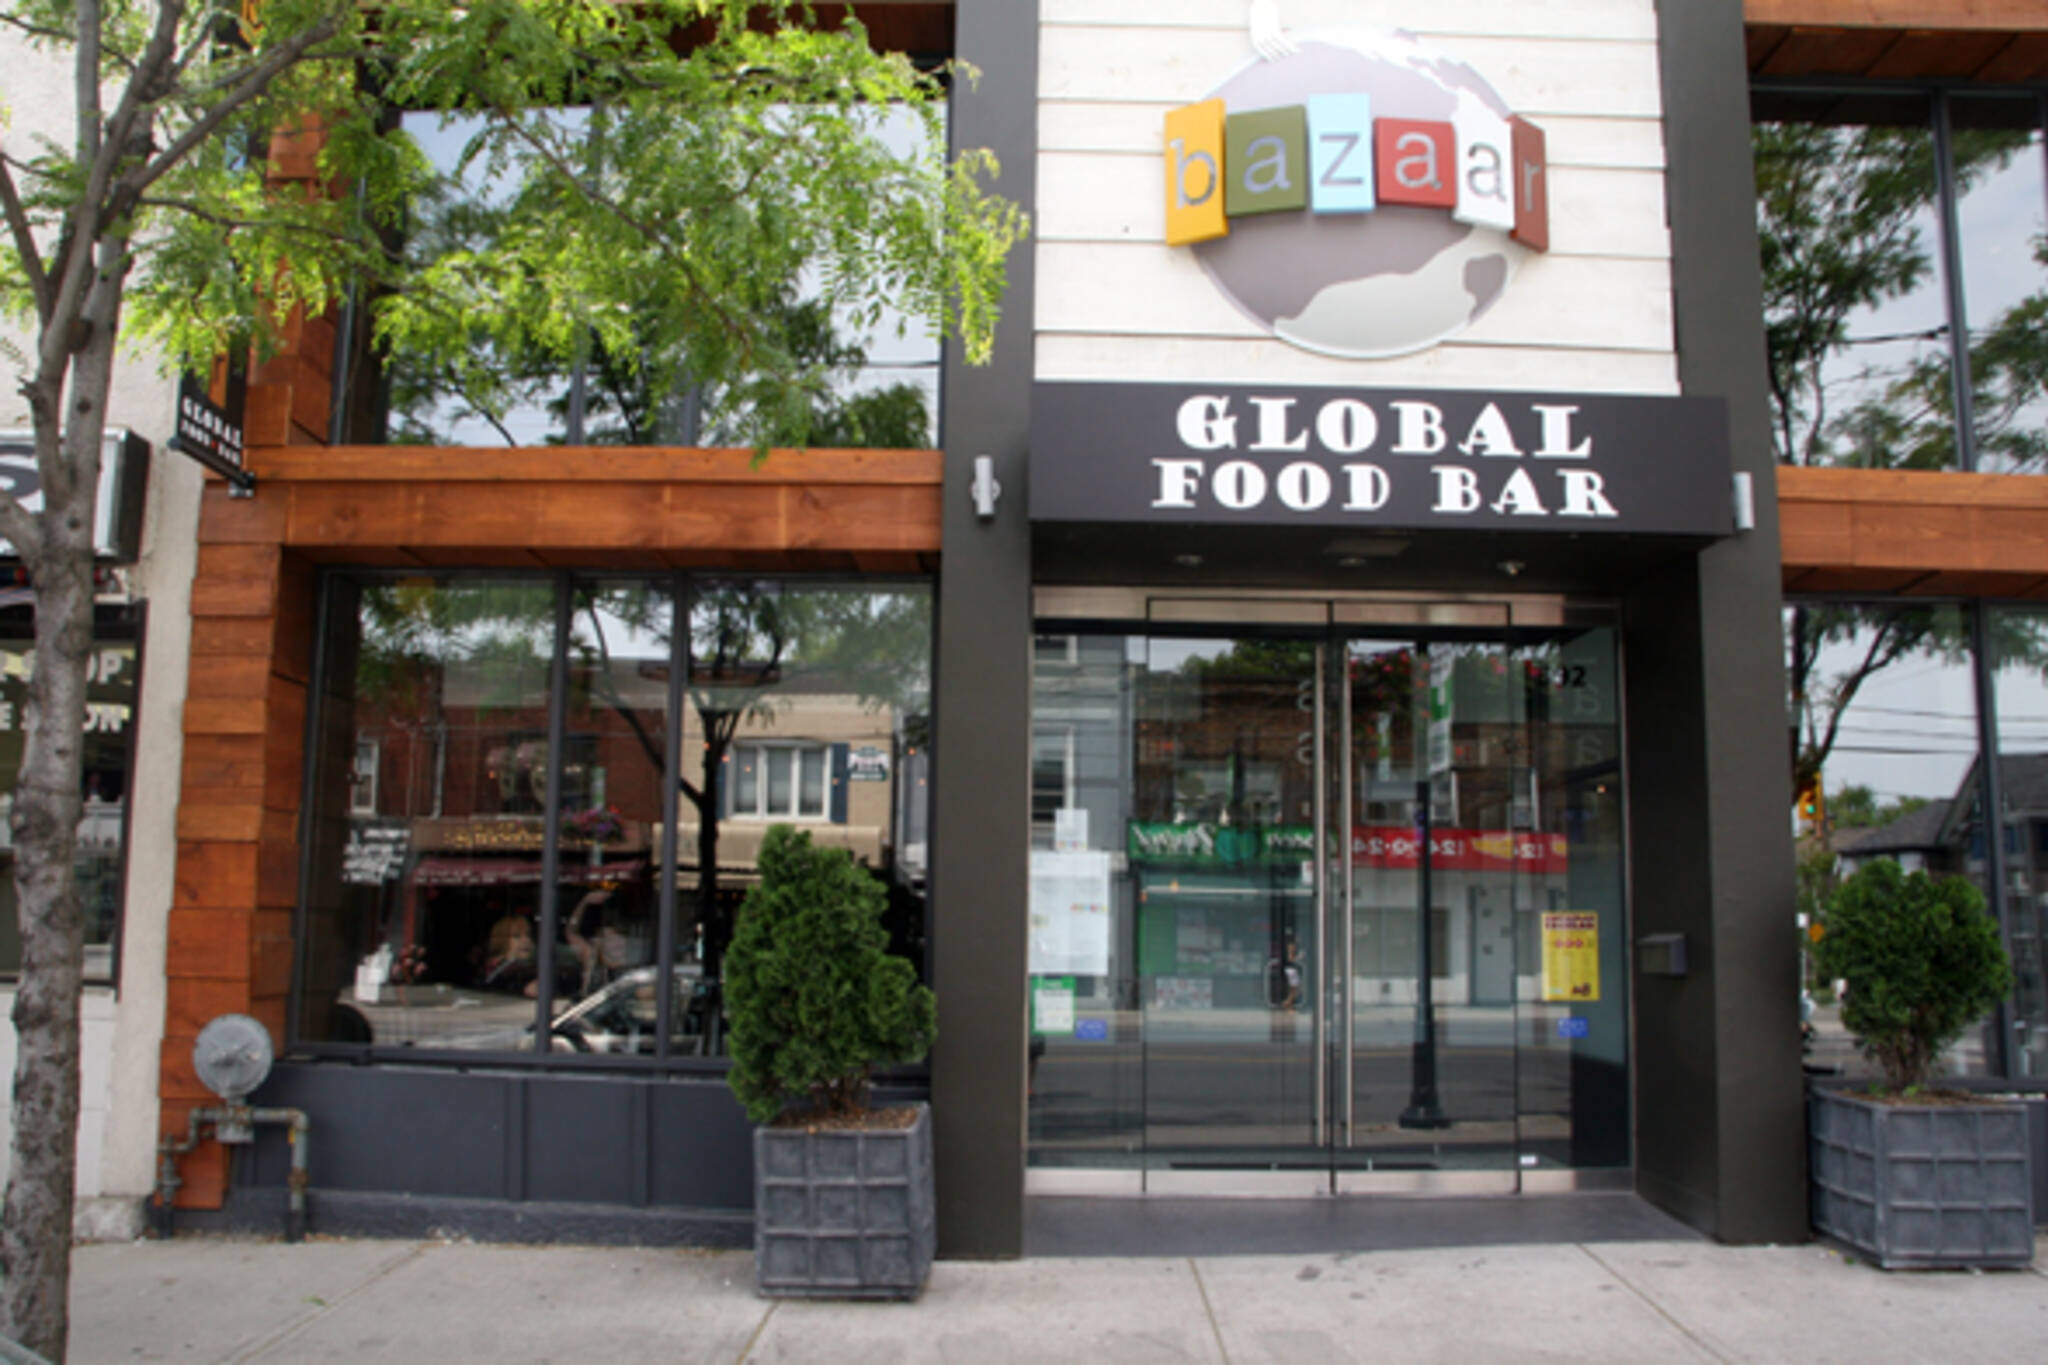 Bazaar Global Food Bar